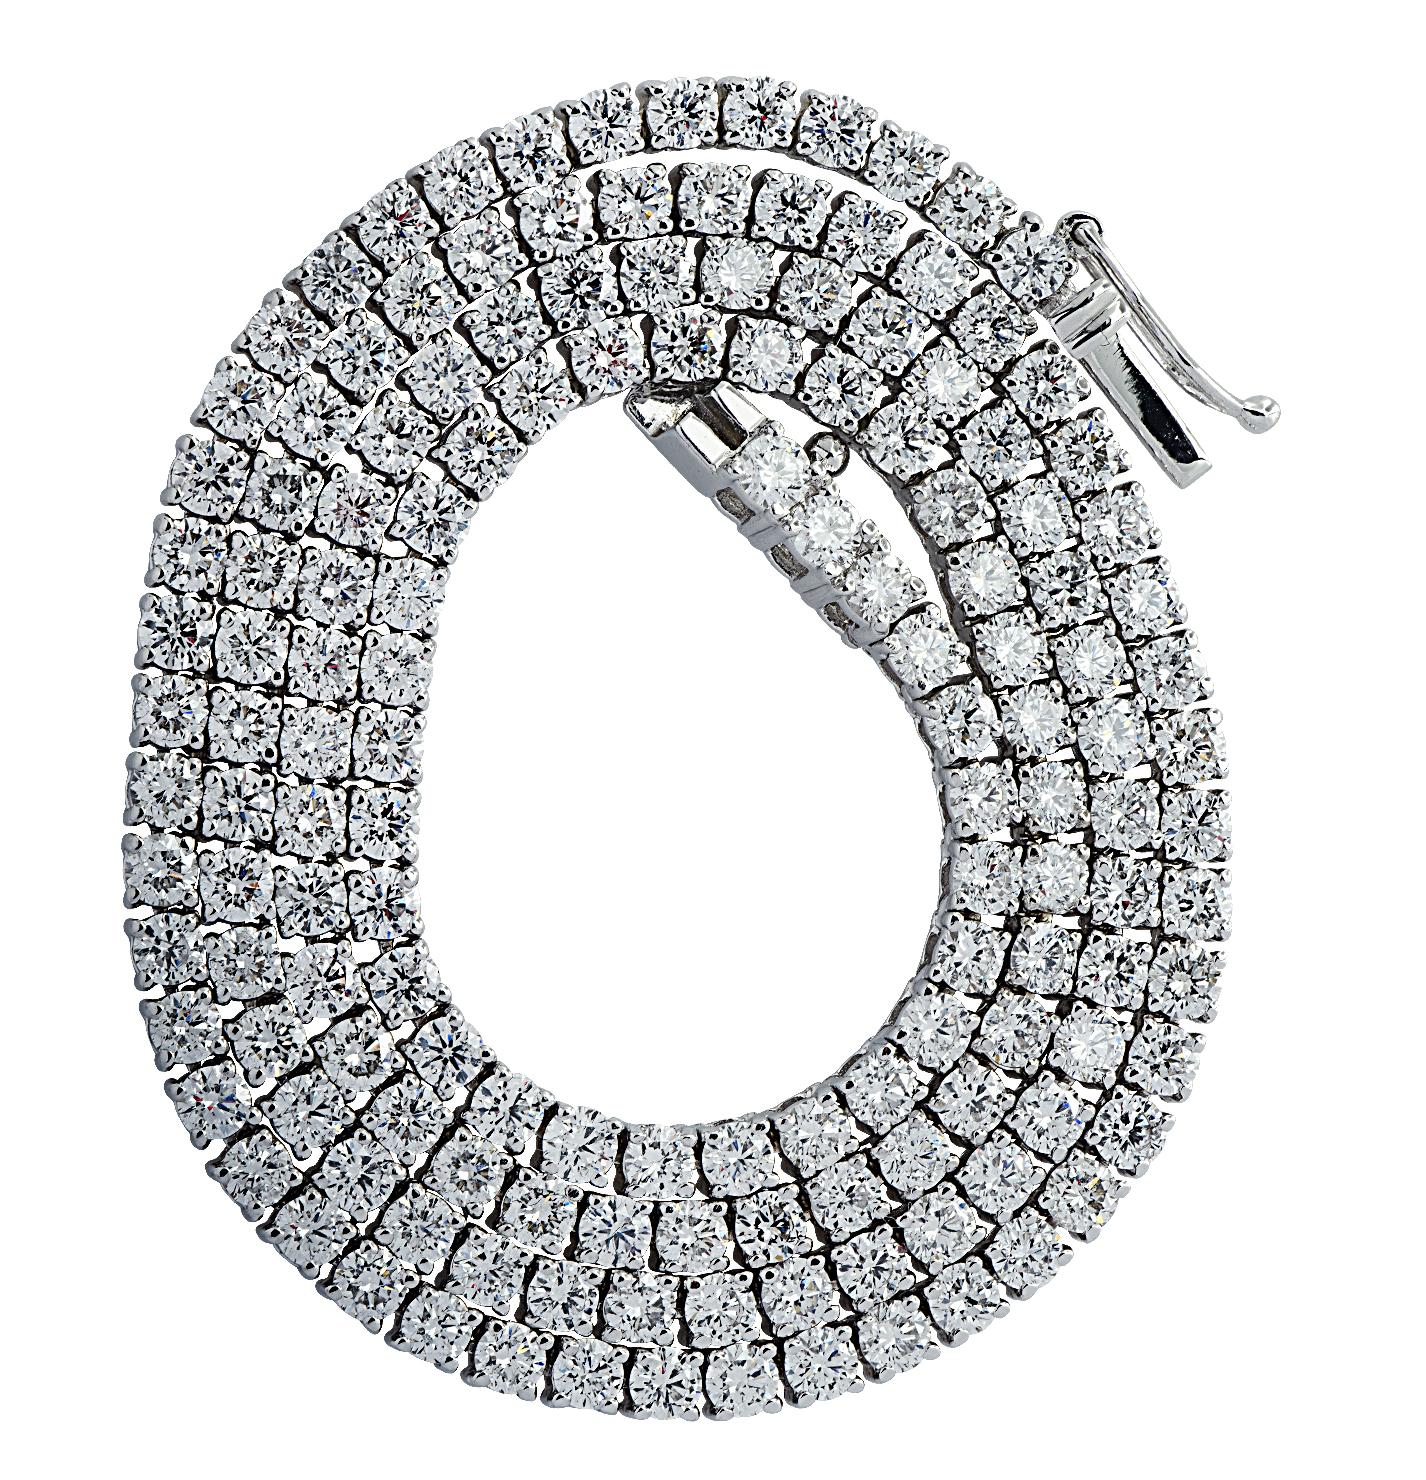 Exquisite Vivid Diamonds Straight Line Diamant-Tennis-Halskette aus 18 Karat Weißgold mit 150 runden Diamanten im Brillantschliff von insgesamt 9,83 Karat, Farbe D-F, Reinheit VS. Jeder Diamant wurde sorgfältig ausgewählt, perfekt aufeinander